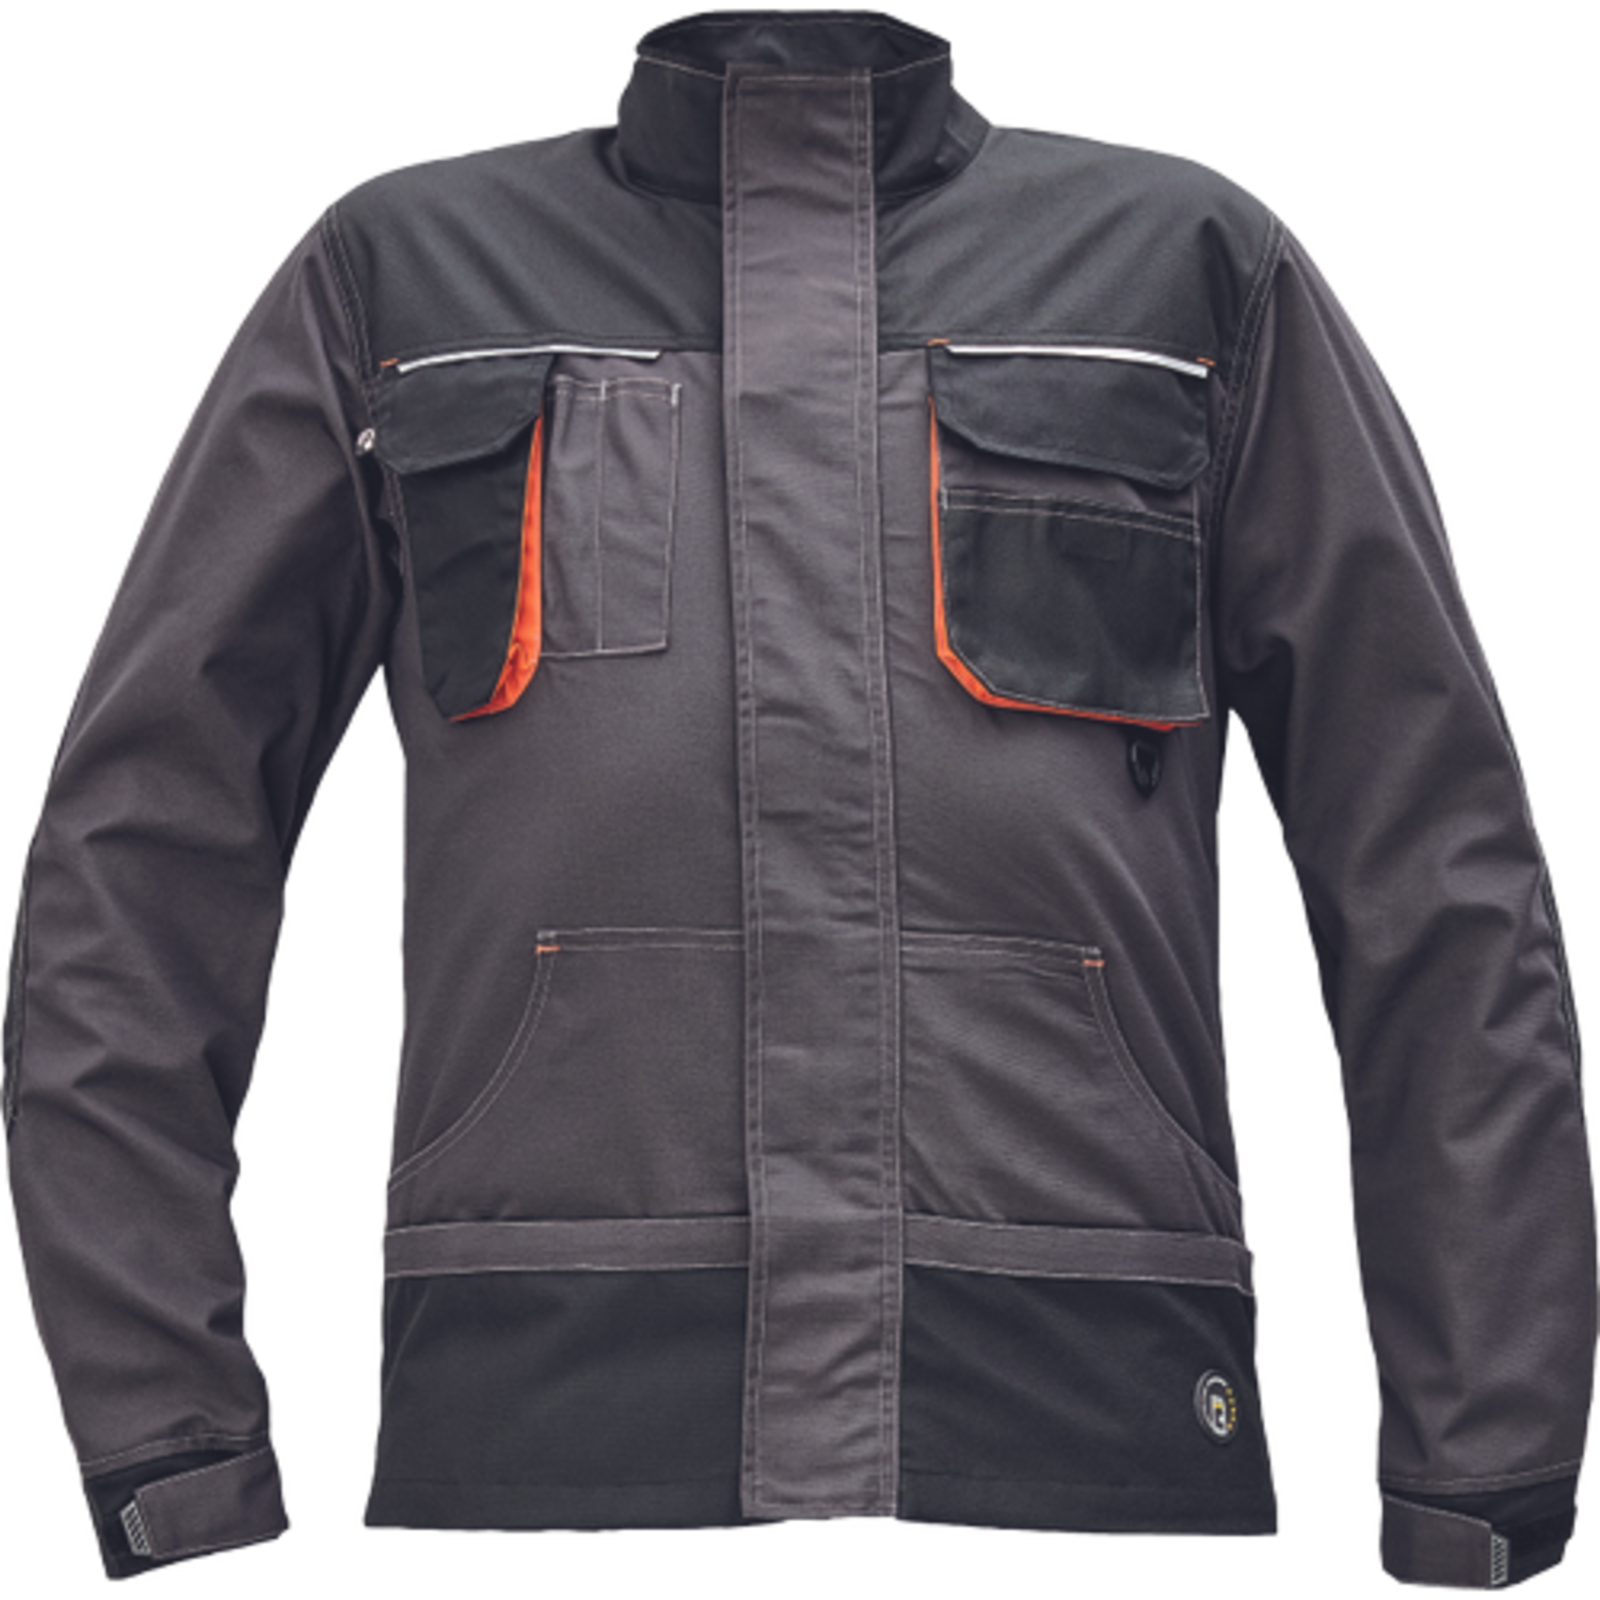 Odolná montérková bunda Emerton Plus - veľkosť: 62, farba: antracit/oranžová